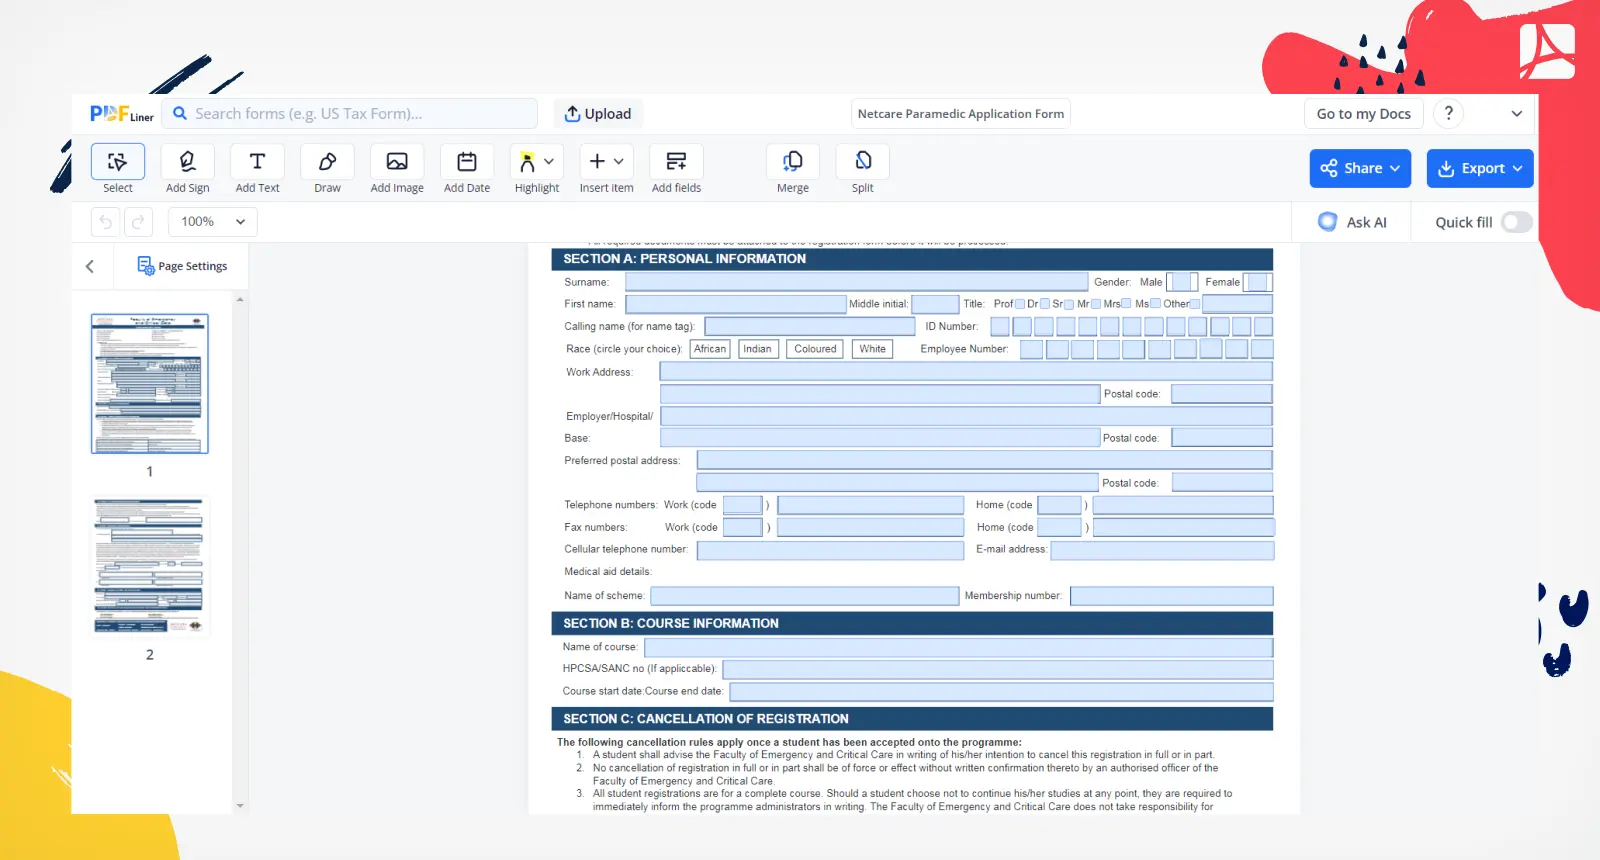 Netcare Paramedic Application Form Screenshot